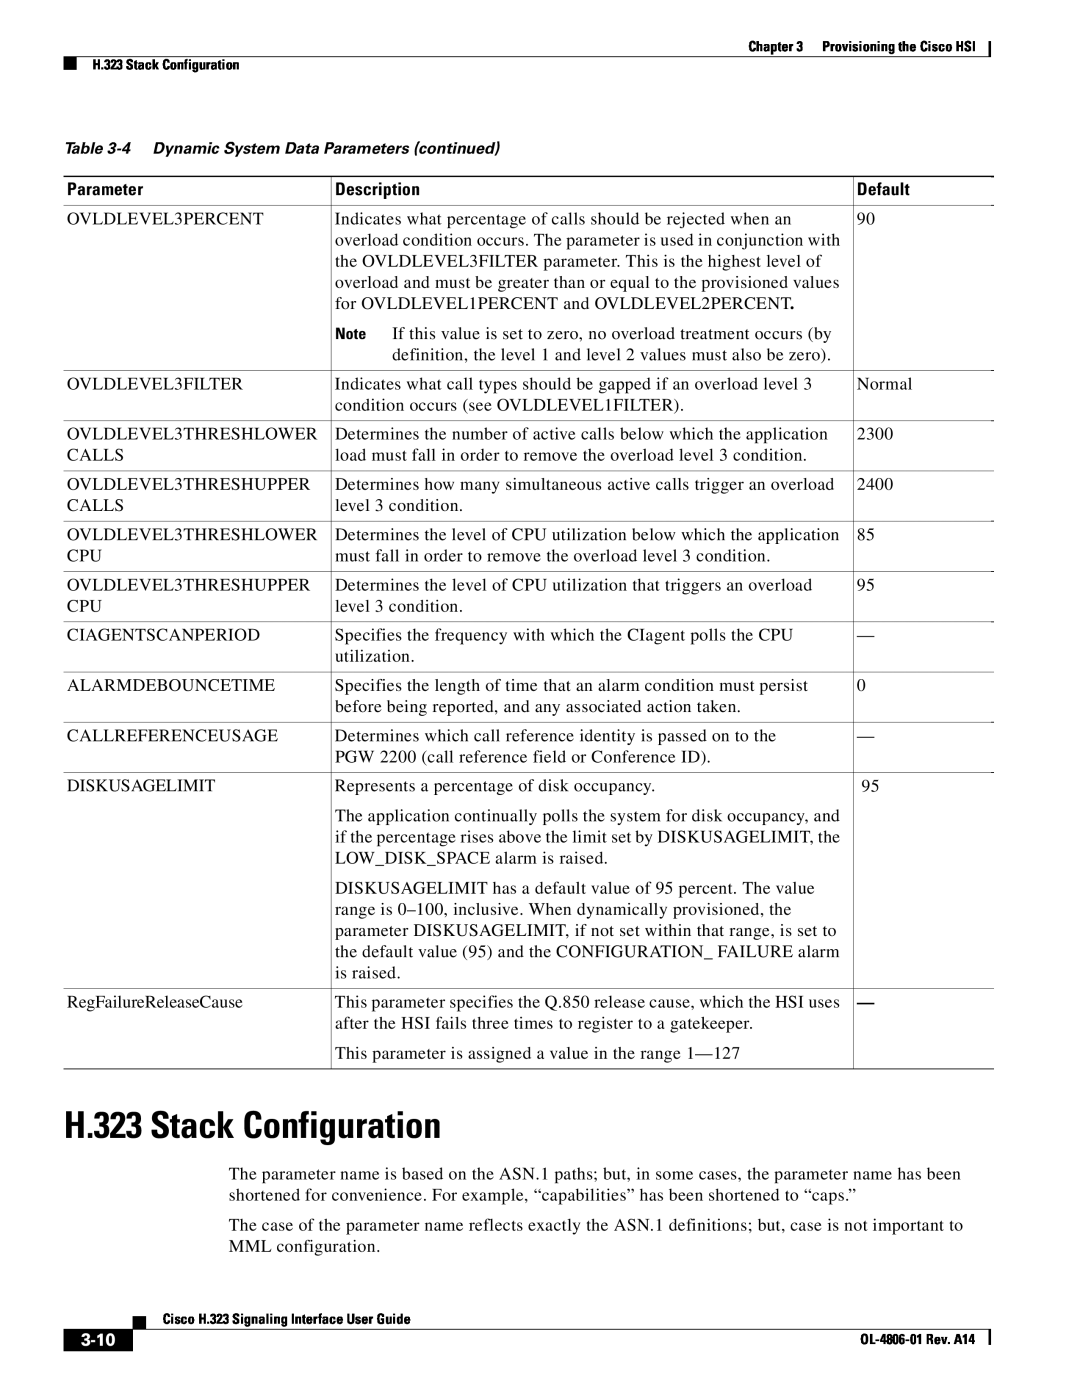 Cisco Systems appendix H.323 Stack Configuration, 3-10, Parameter, Description, Default 